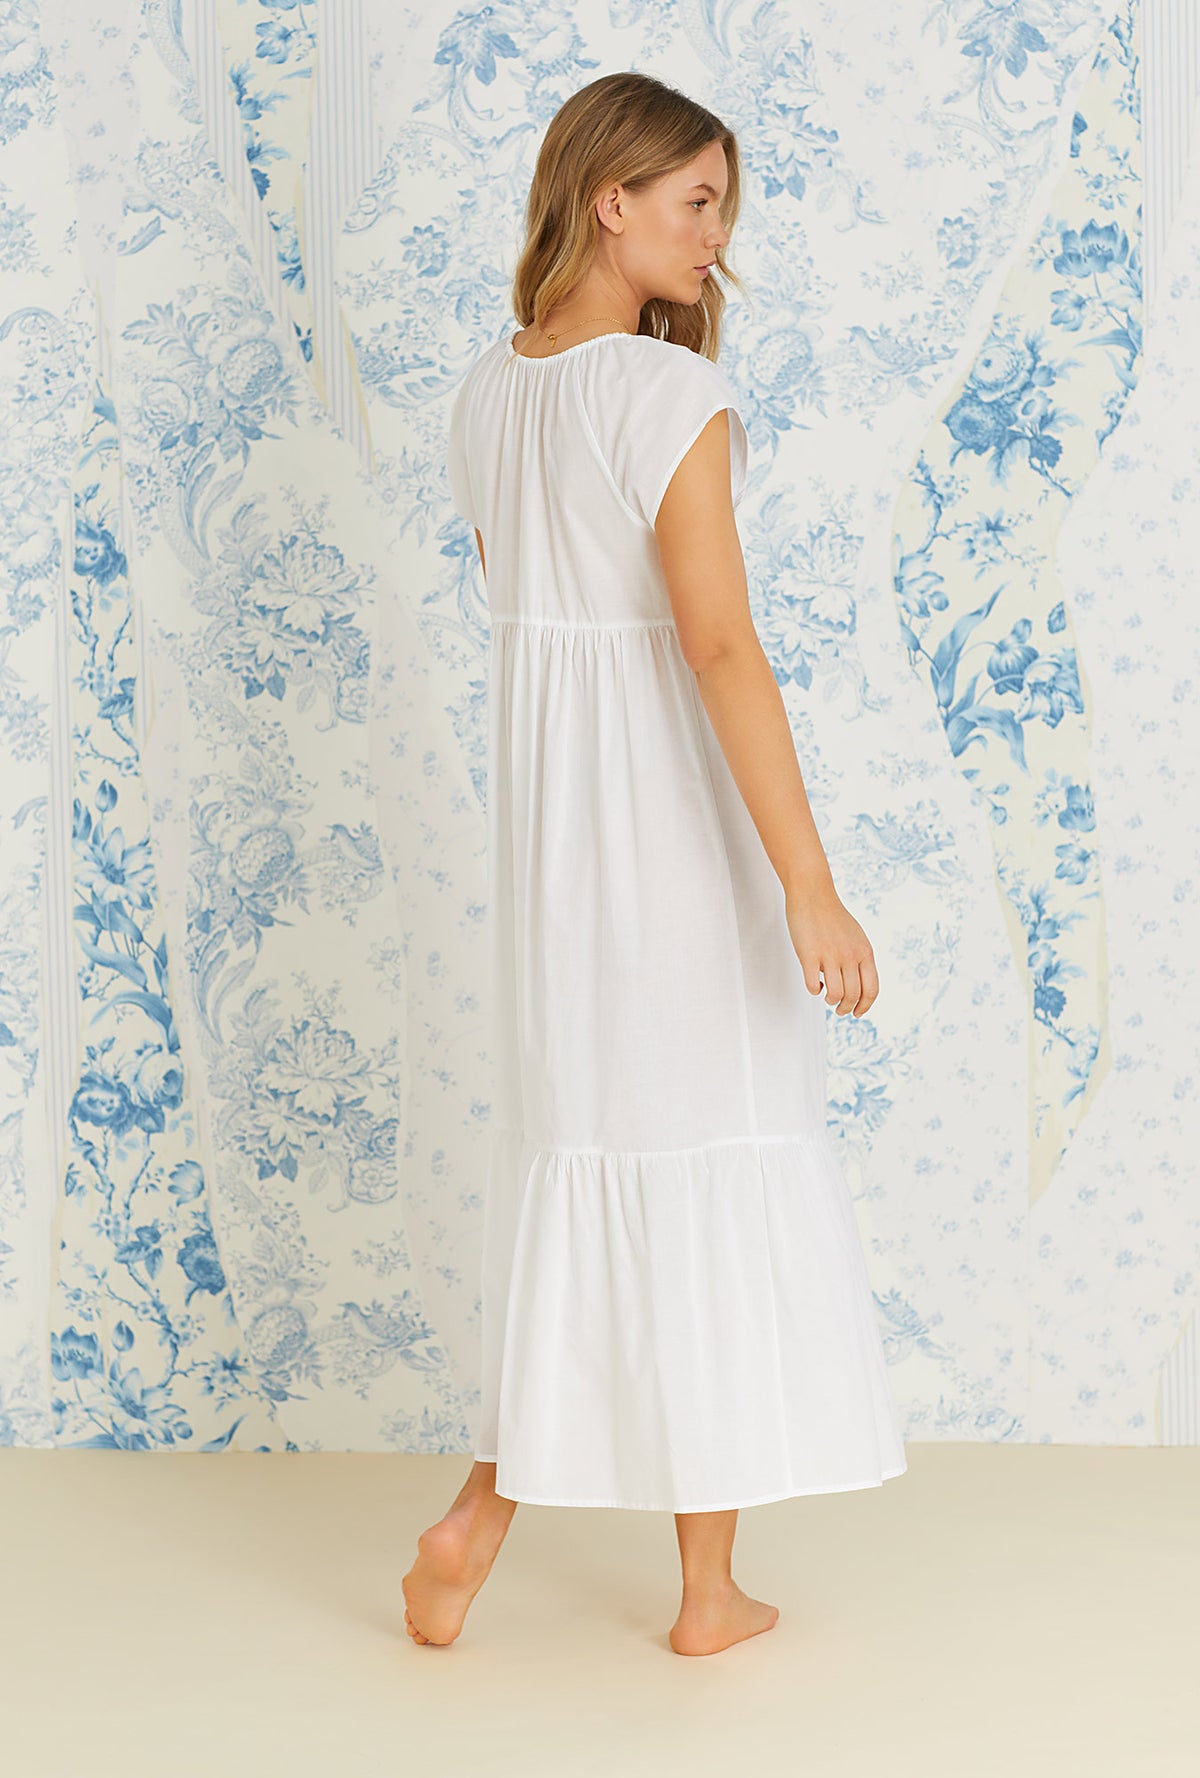 Iconic White &quot;Juliette&quot; Cap Sleeve Cotton Woven Long Nightgown